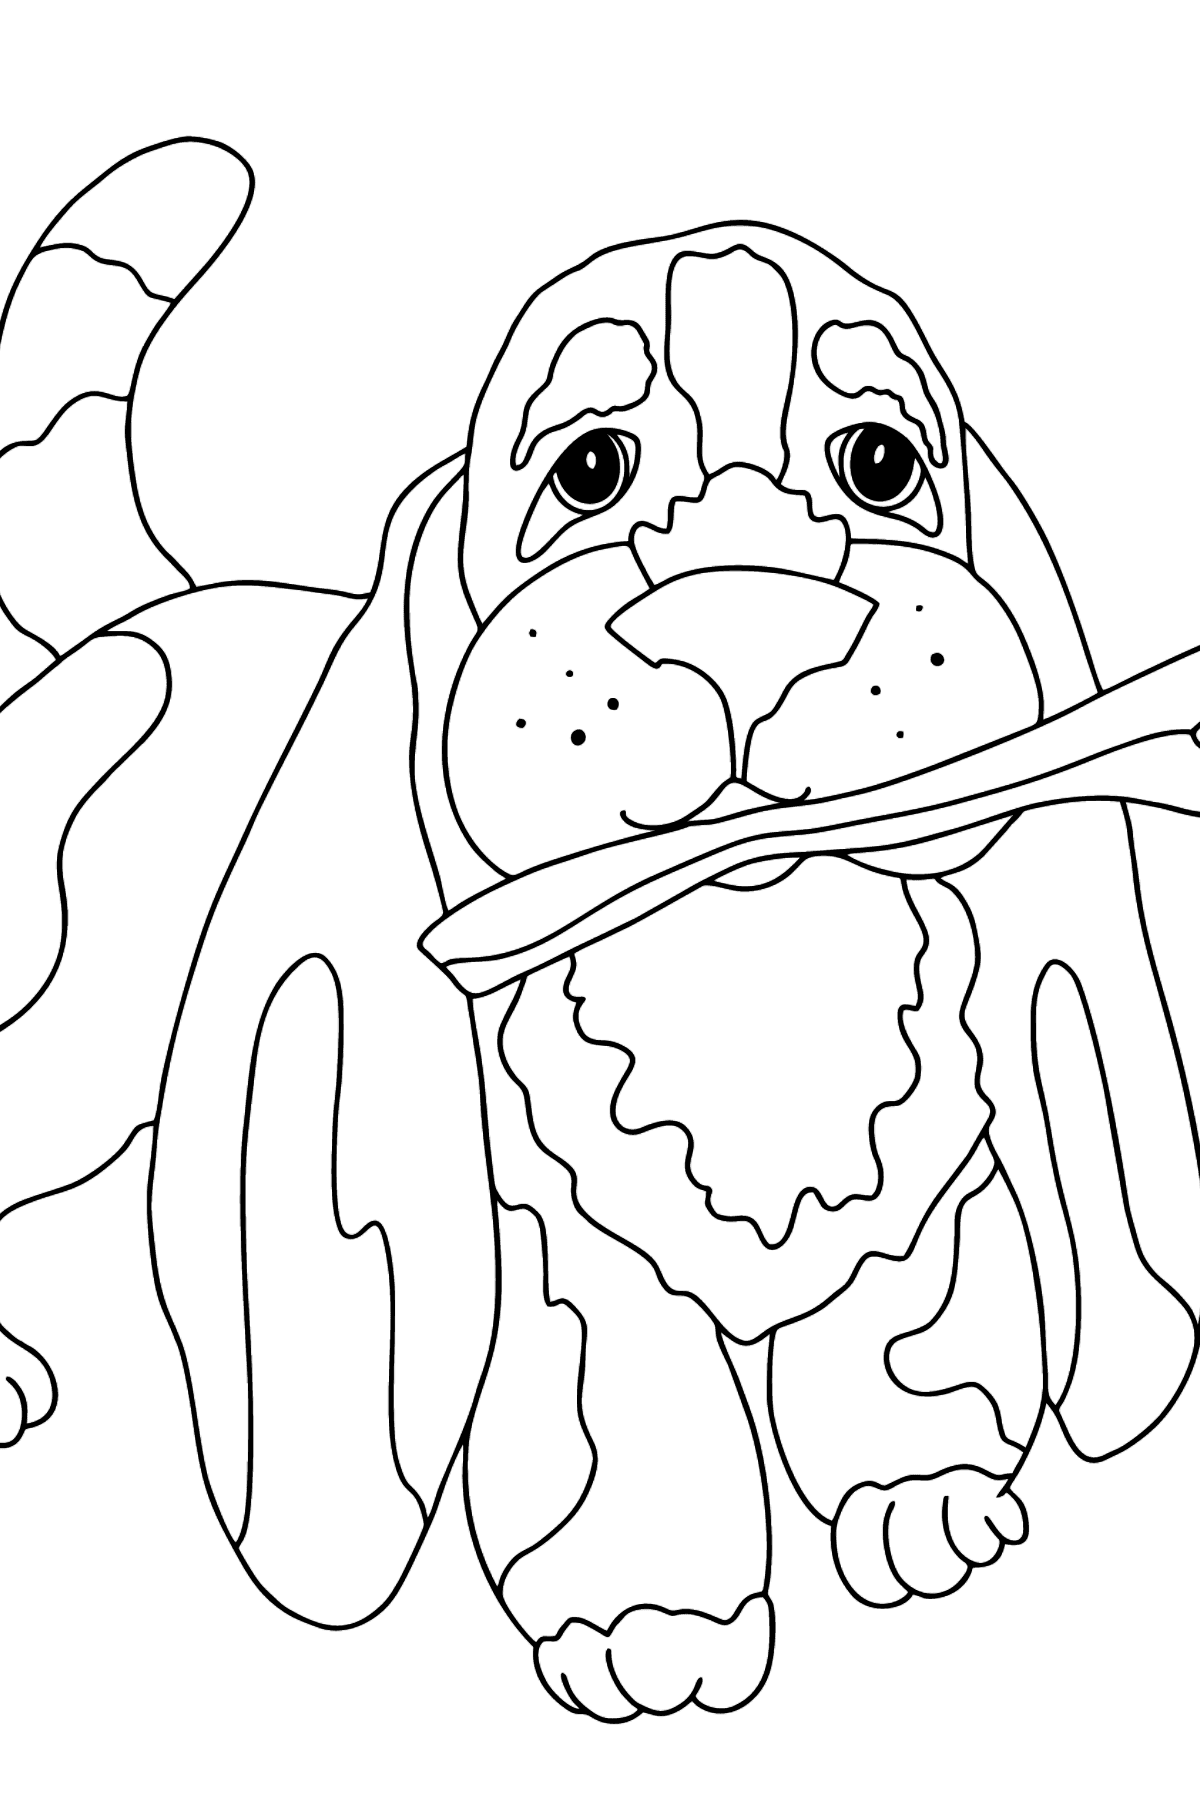 Раскраска собака для малышей - Картинки для Детей